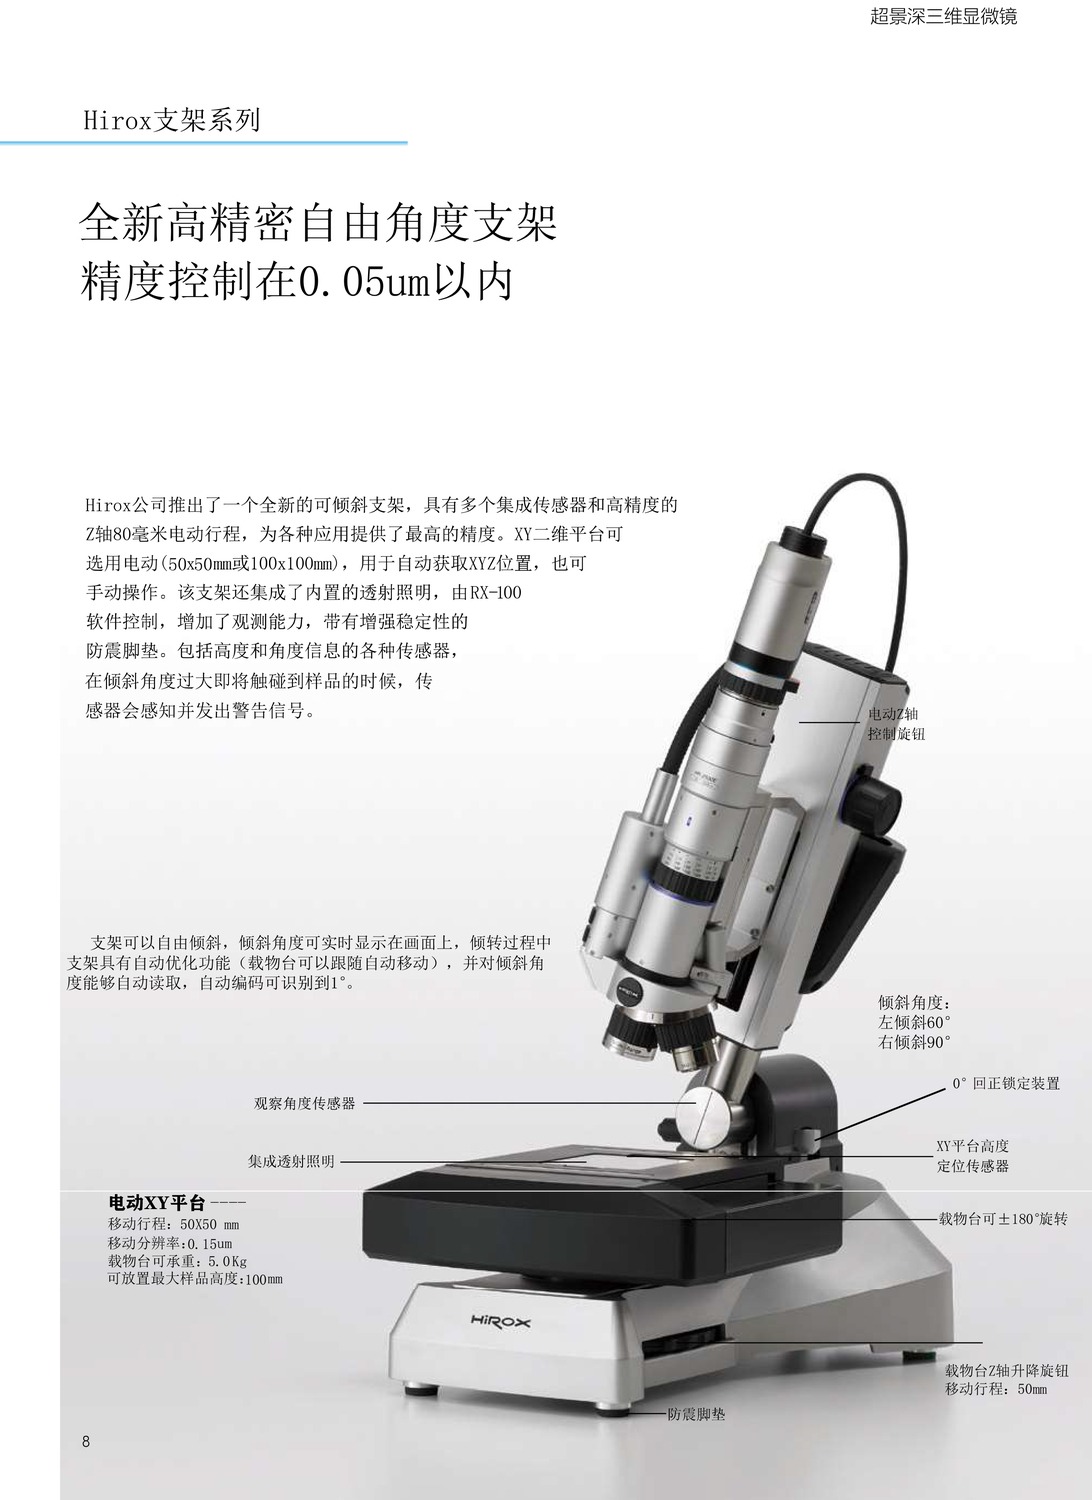 RX-100产品资料20201210-8.jpg